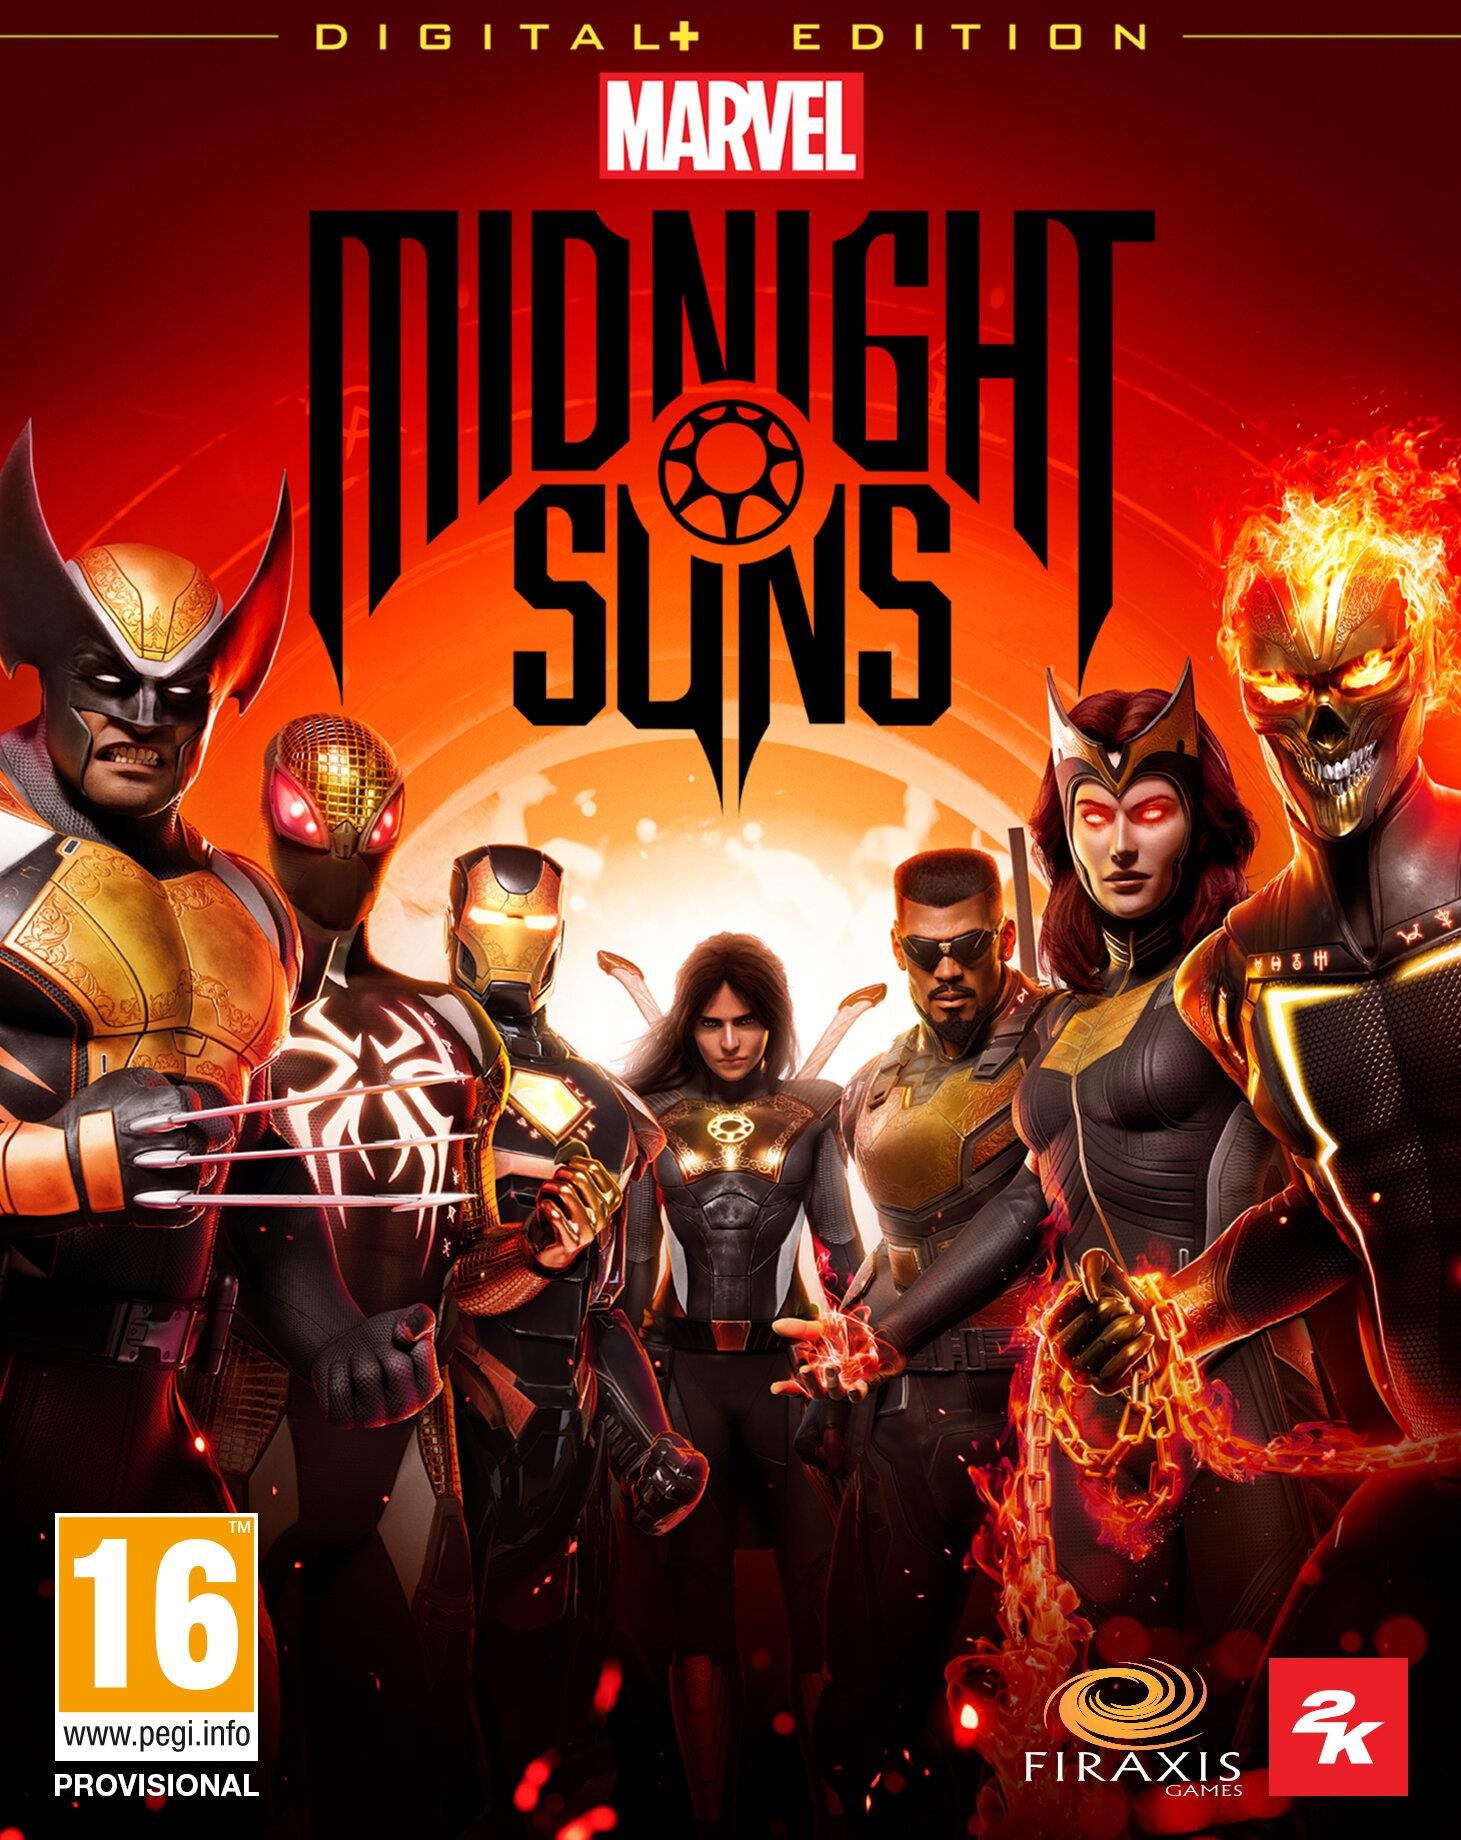 Marvel's Midnight Suns Digital+ Edition - PC DIGITAL